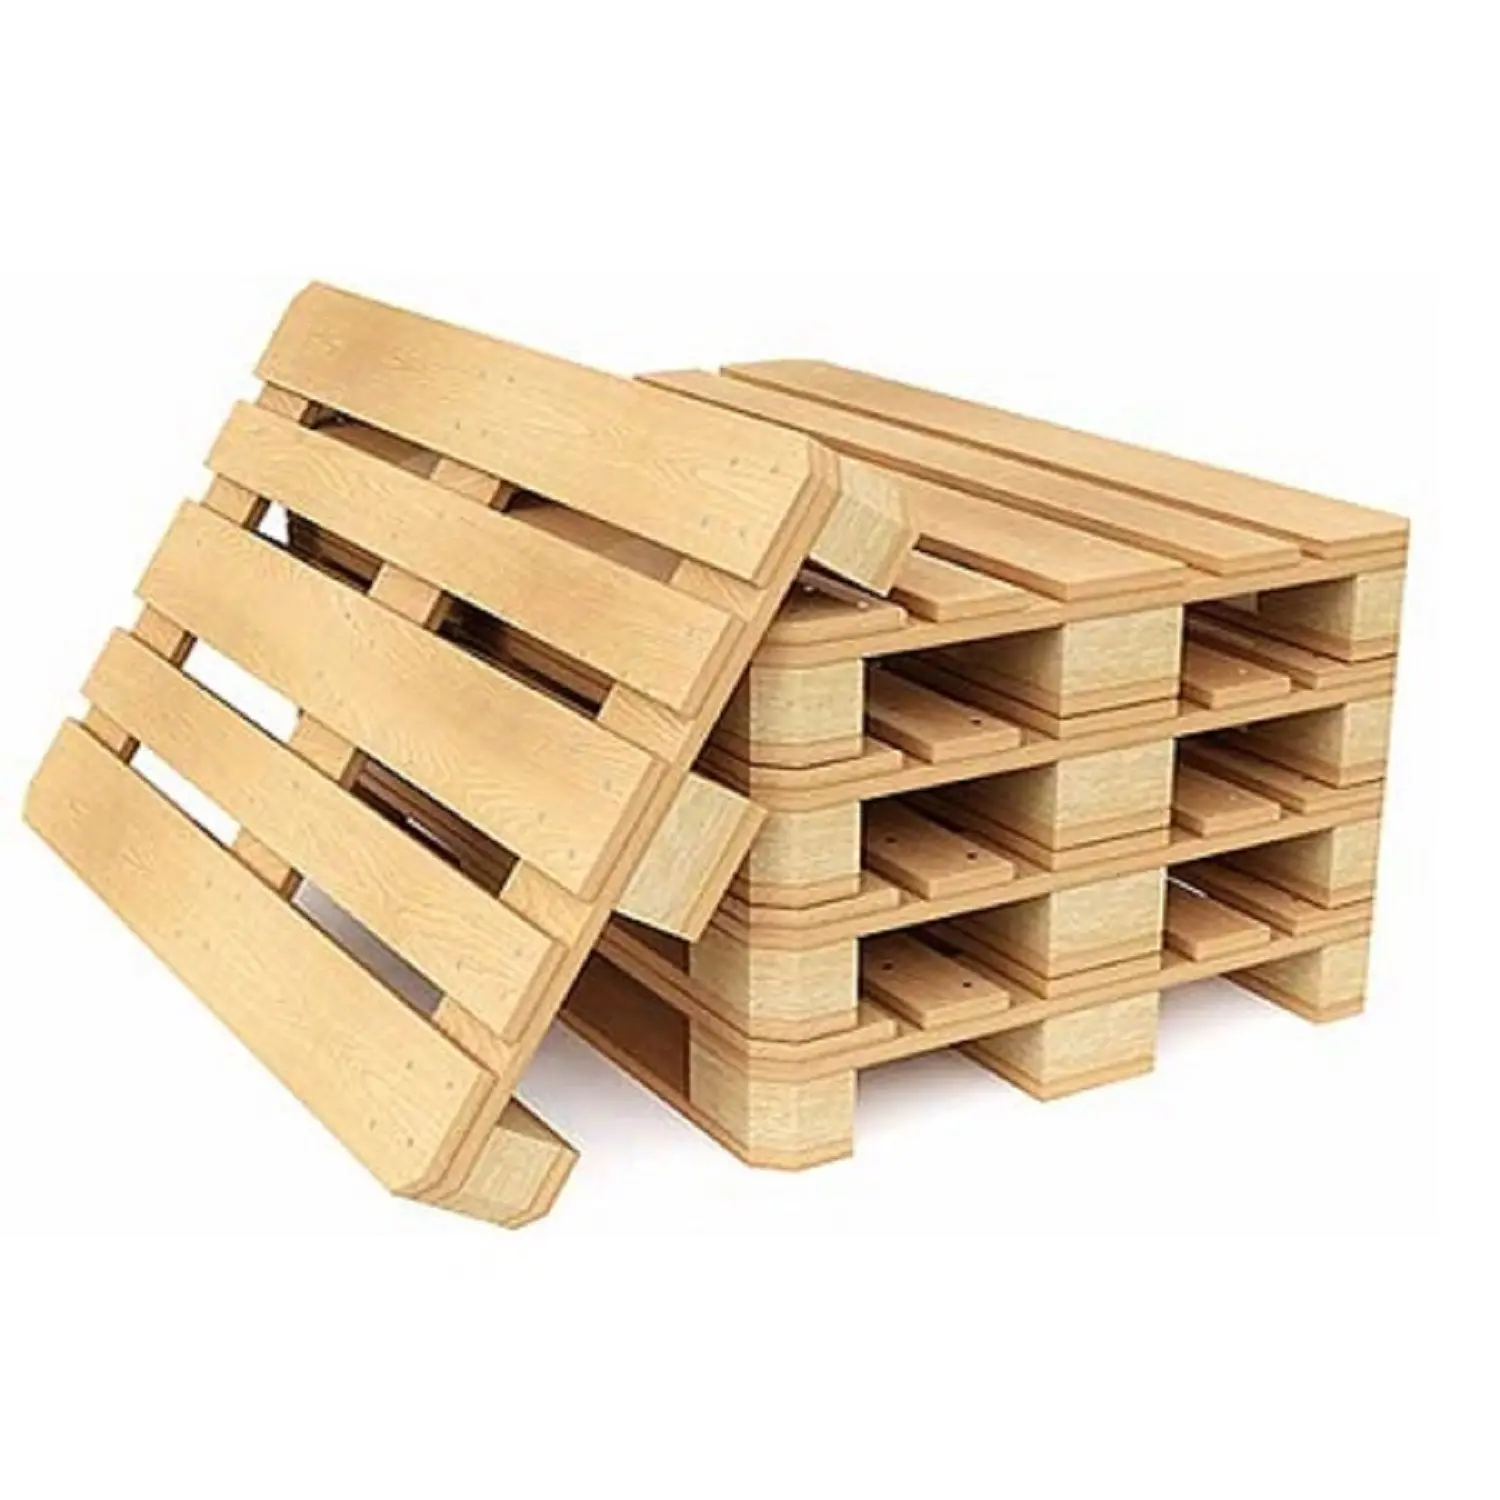 Qualità EURO EPAL PALLET di legno all'ingrosso alto produttore nuovo miglior materiale con tasso a buon mercato